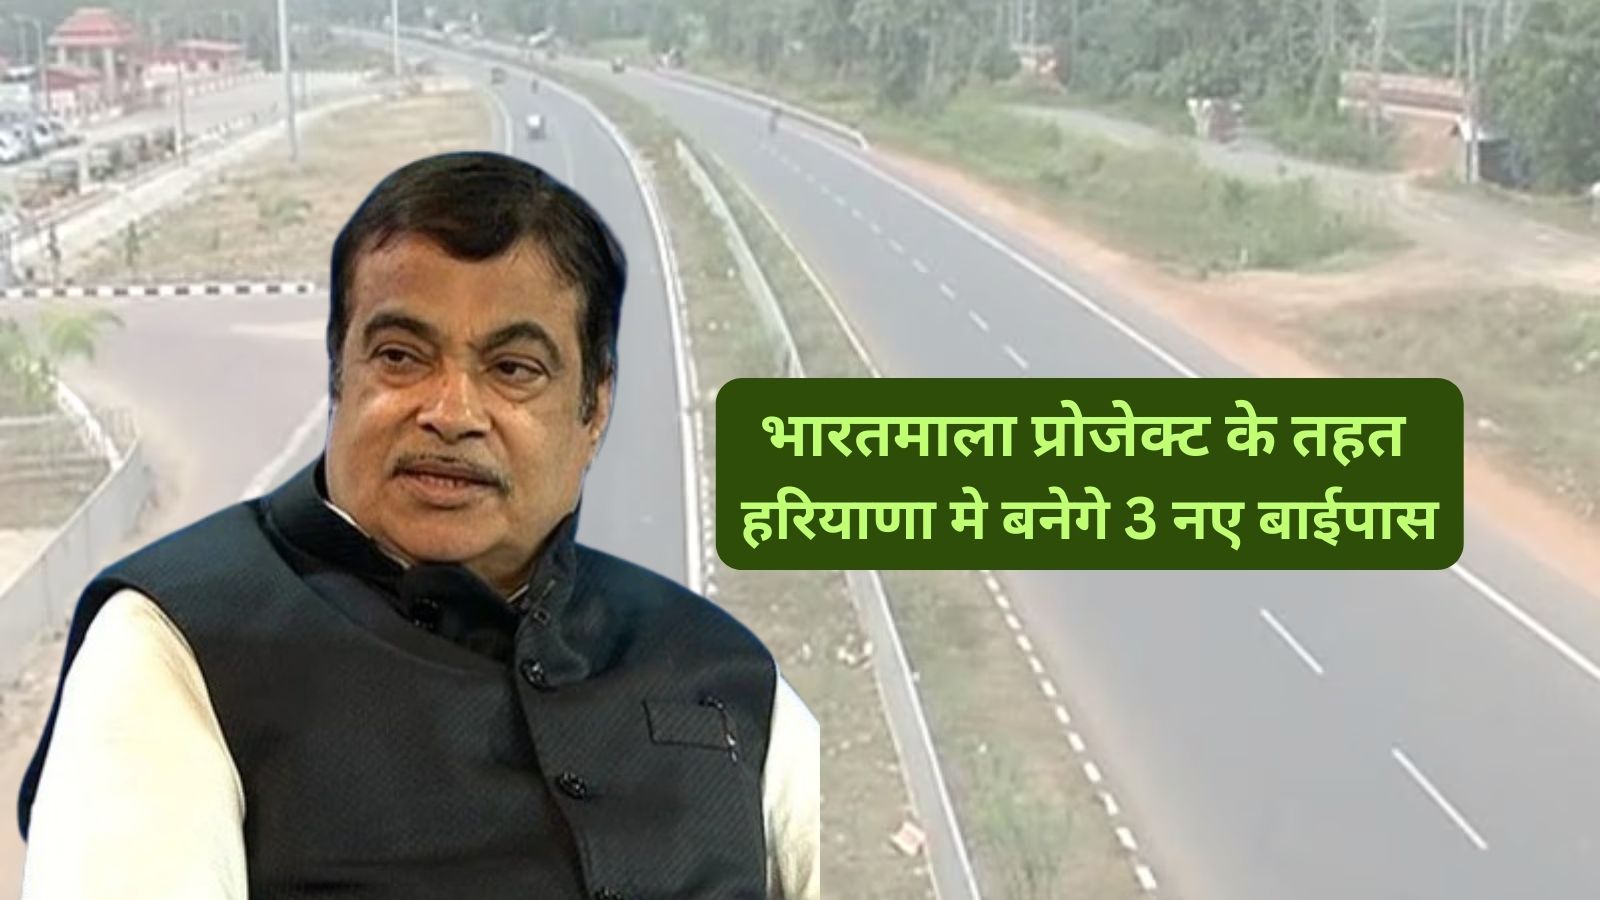 3 New Bypass Haryana:भारतमाला प्रोजेक्ट के तहत हरियाणा मे बनेगे 3 नए बाईपास,जानिए कहा कहा बनेगे ये नए बाईपास